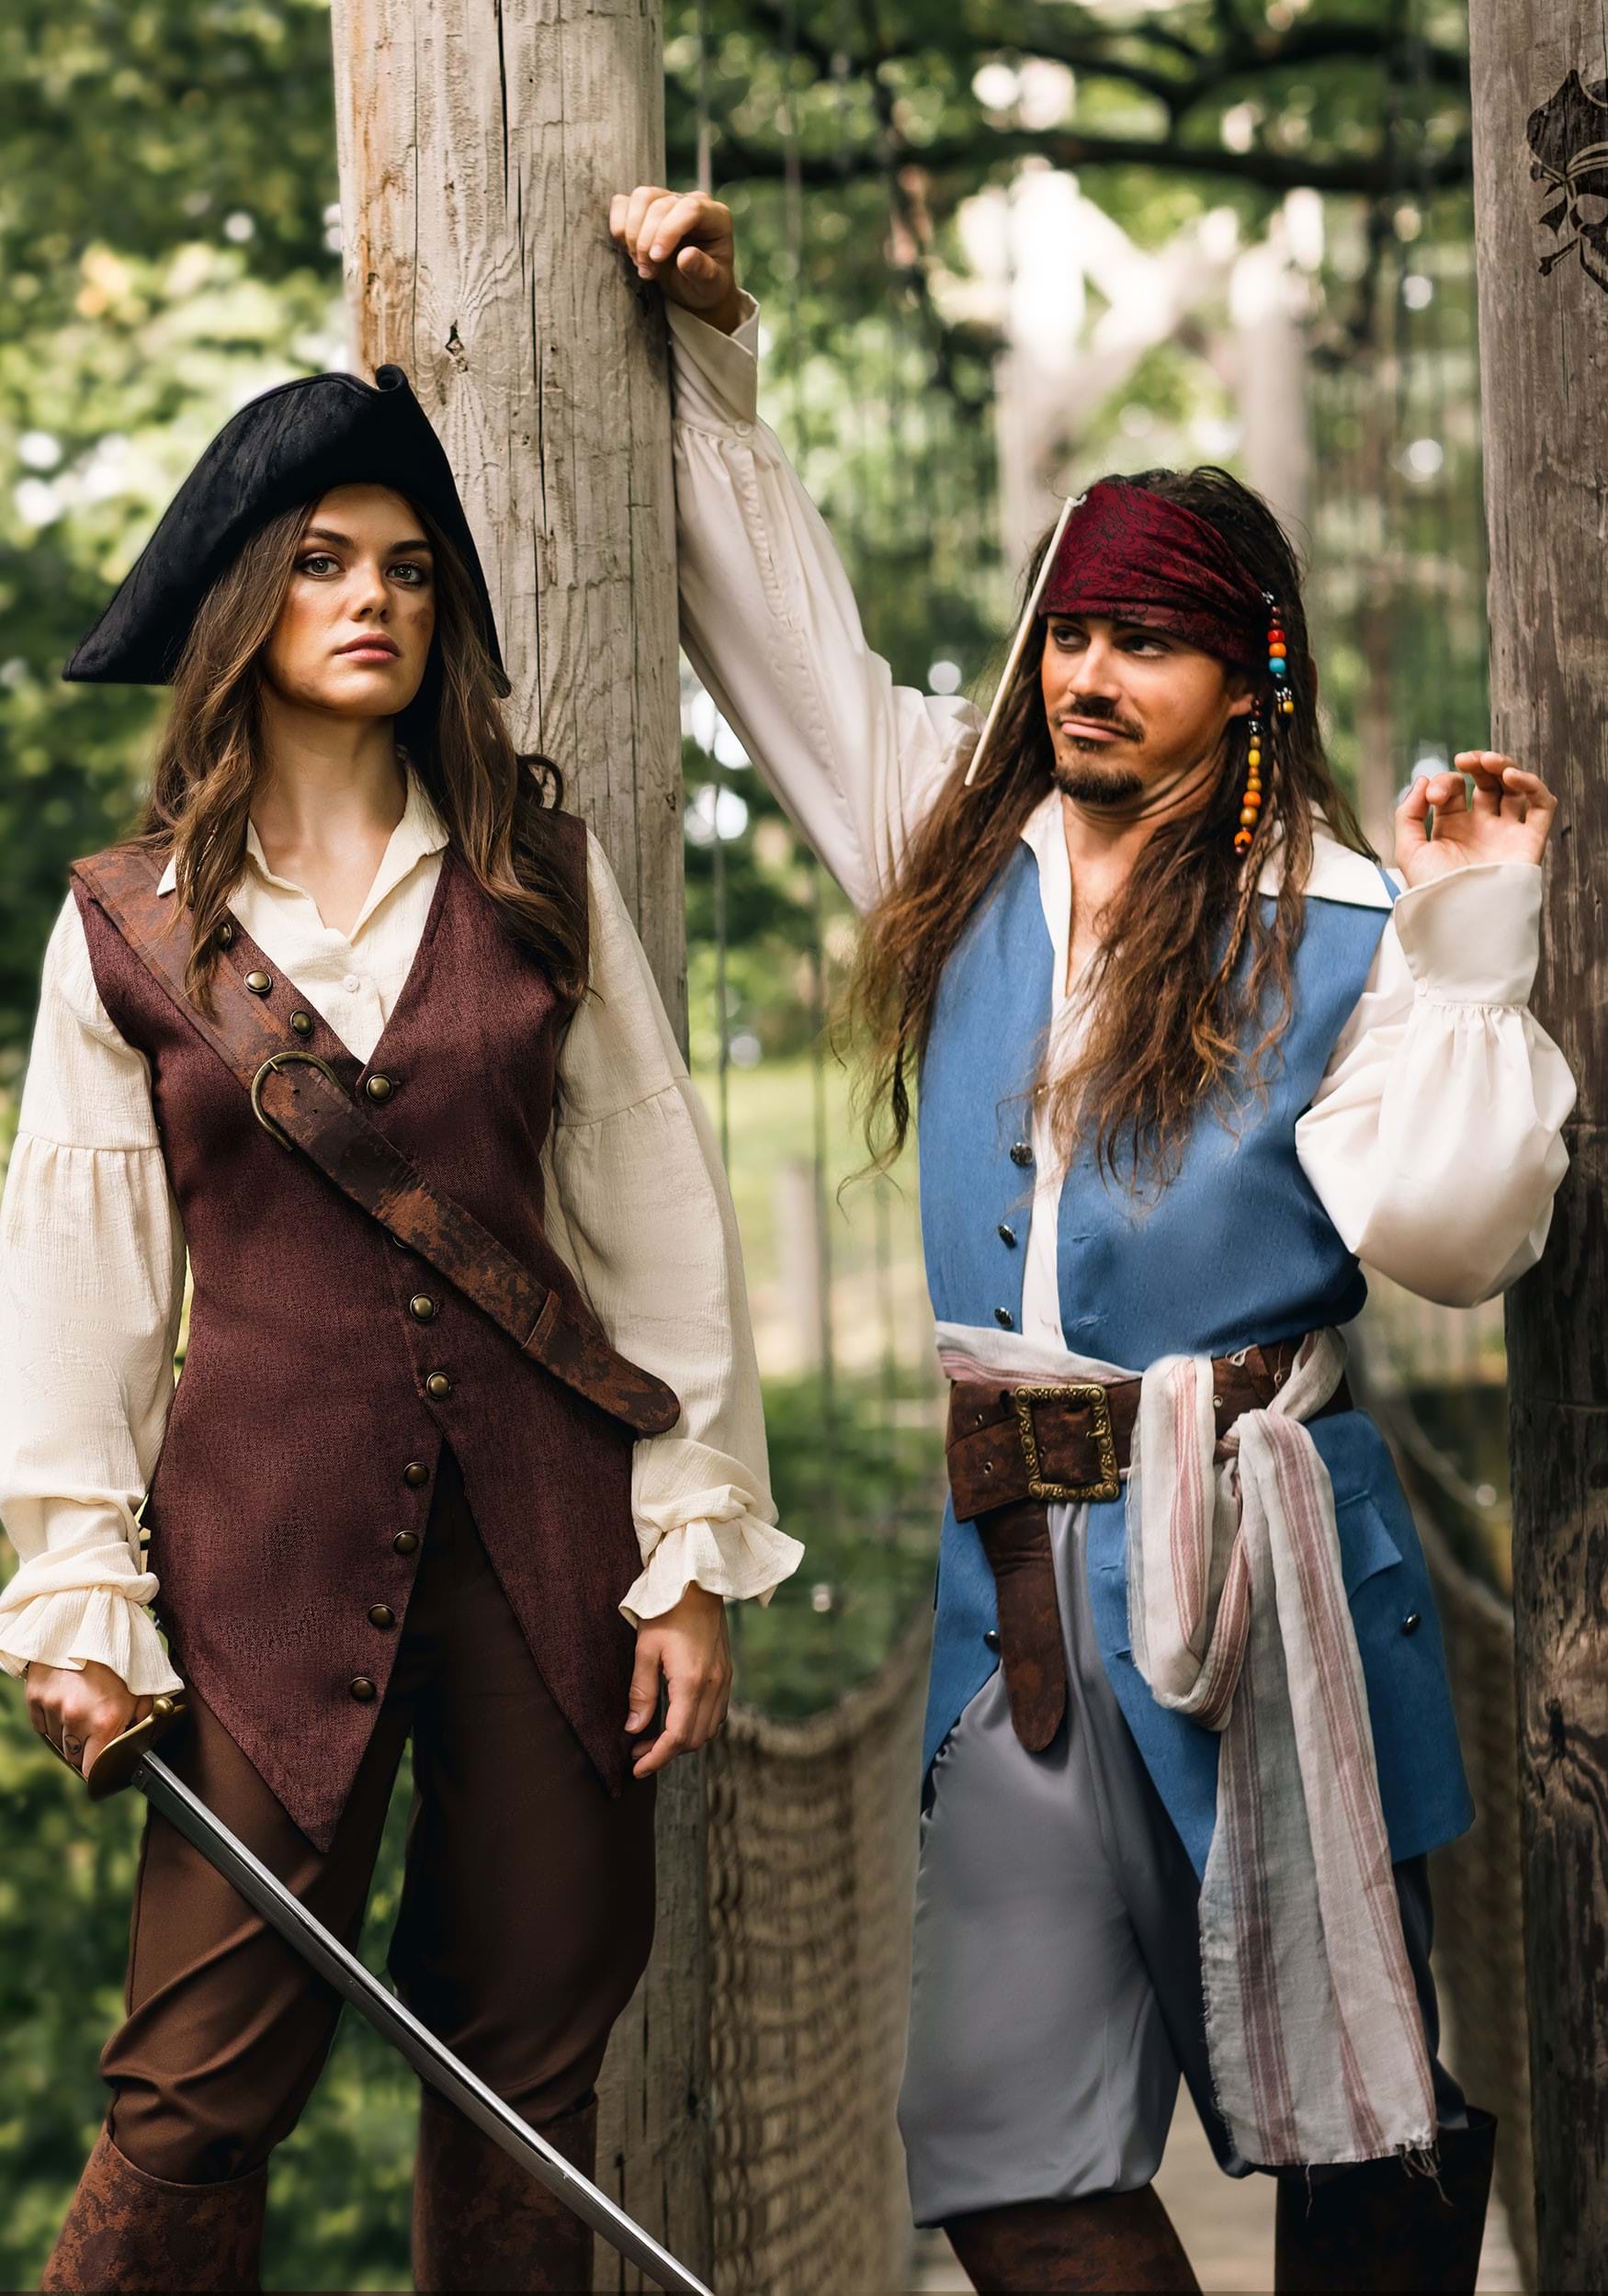 Authentic Captain Jack Sparrow Adult Costume 